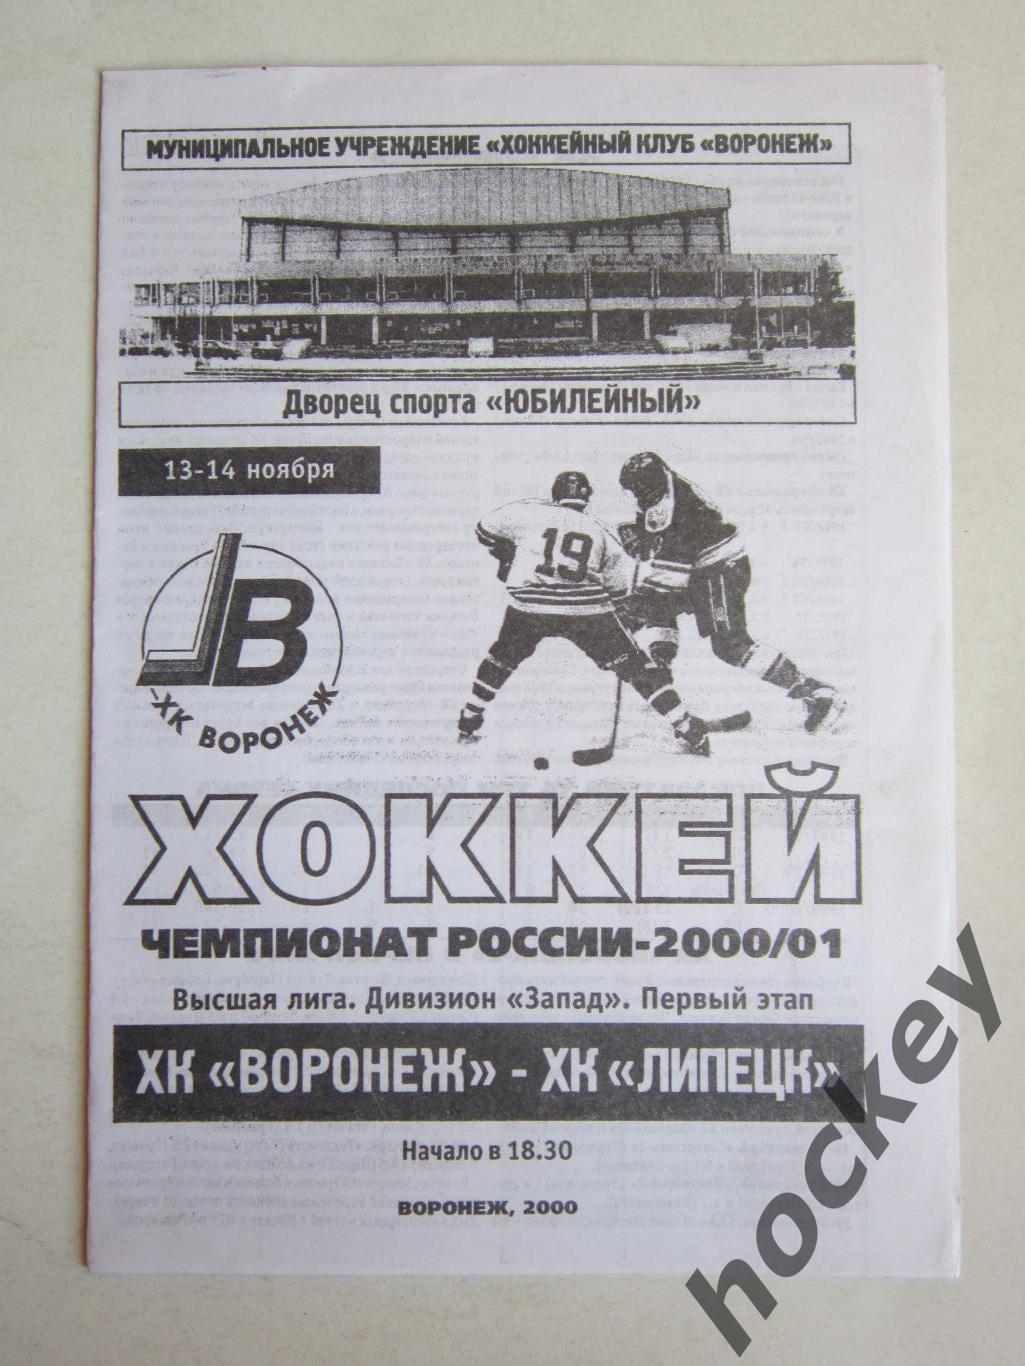 ХК Воронеж Воронеж - ХК Липецк Липецк 13-14.11.2000